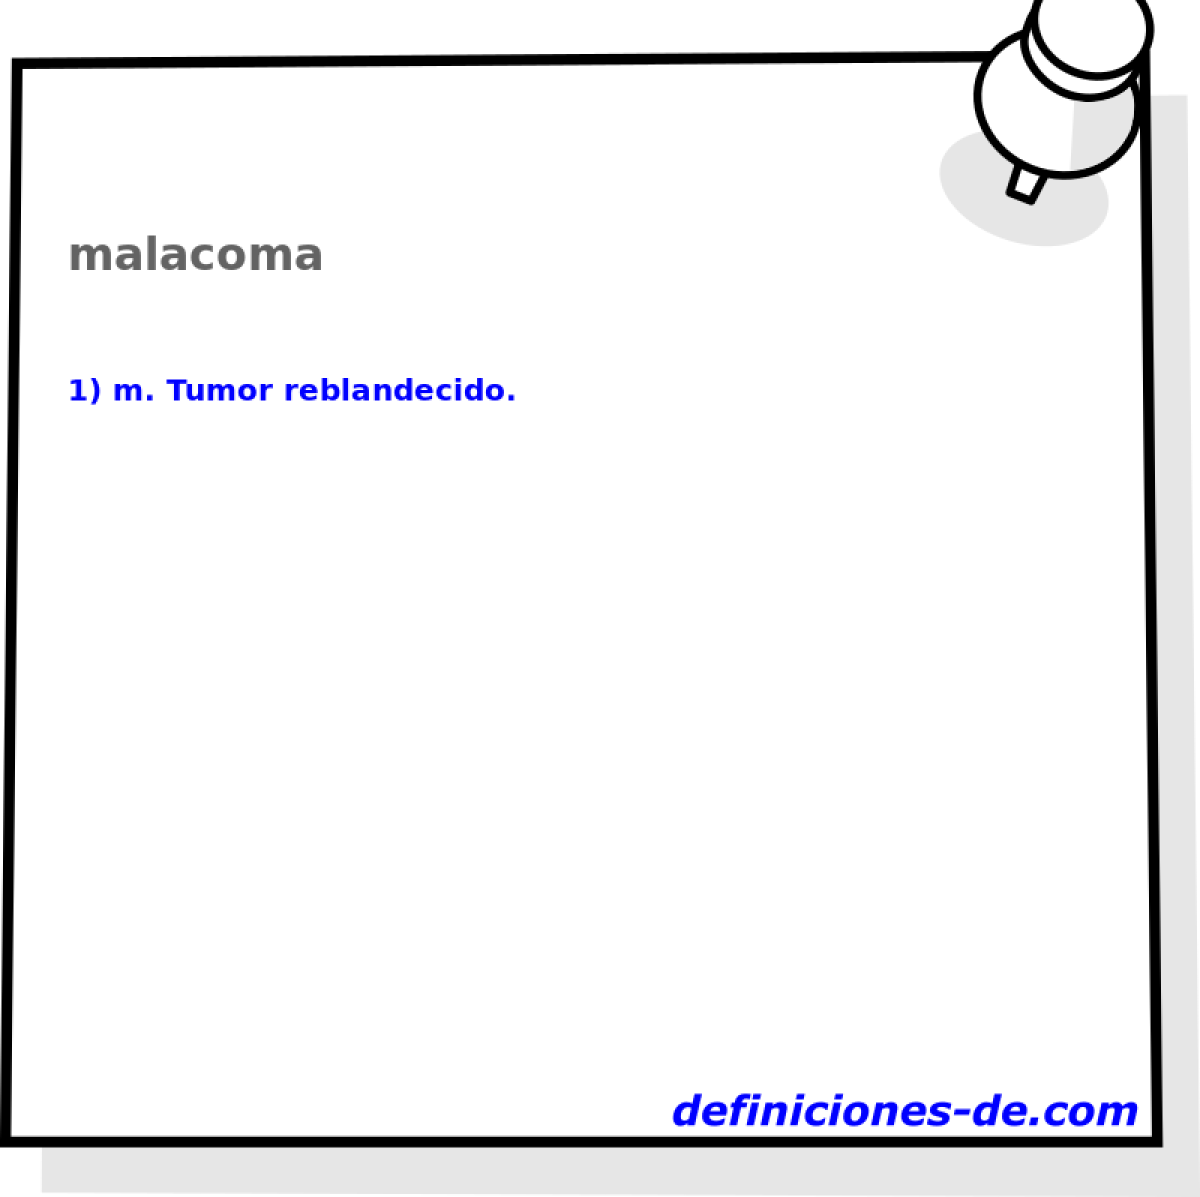 malacoma 